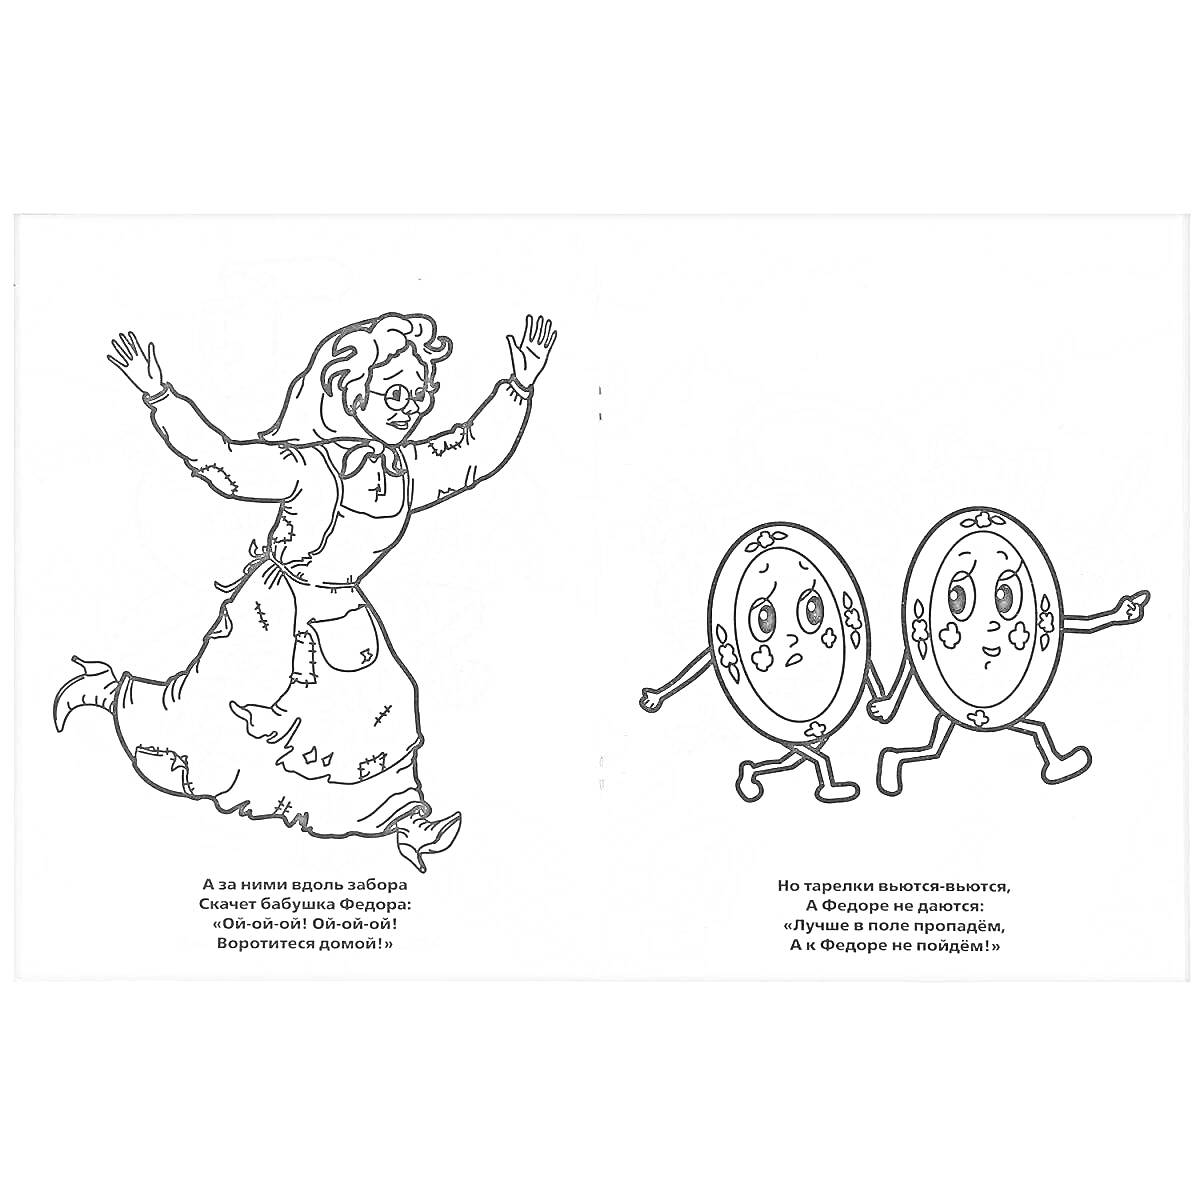 Раскраска Женщина (Федора) в фартуке бежит, два блюда с ручками и ножками держатся за руки и идут